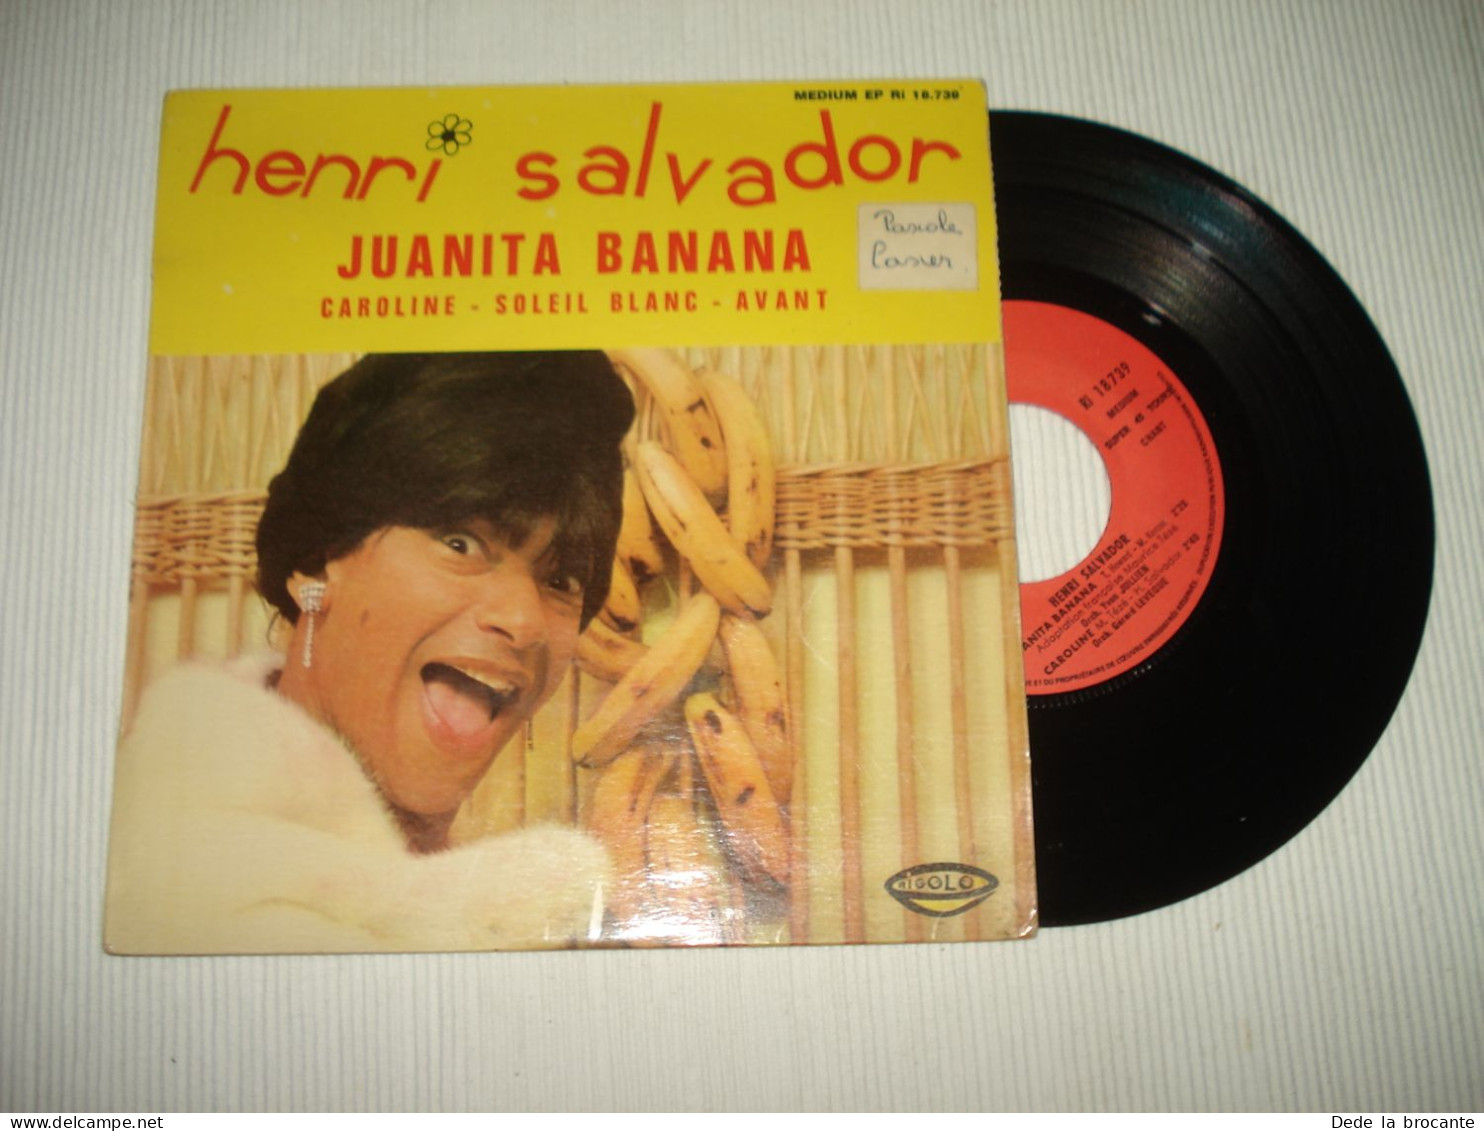 B13 / Henri Salvador – Juanita Banana  - EP  – Ri 18.739 - Fr 1966  EX/EX - Formatos Especiales